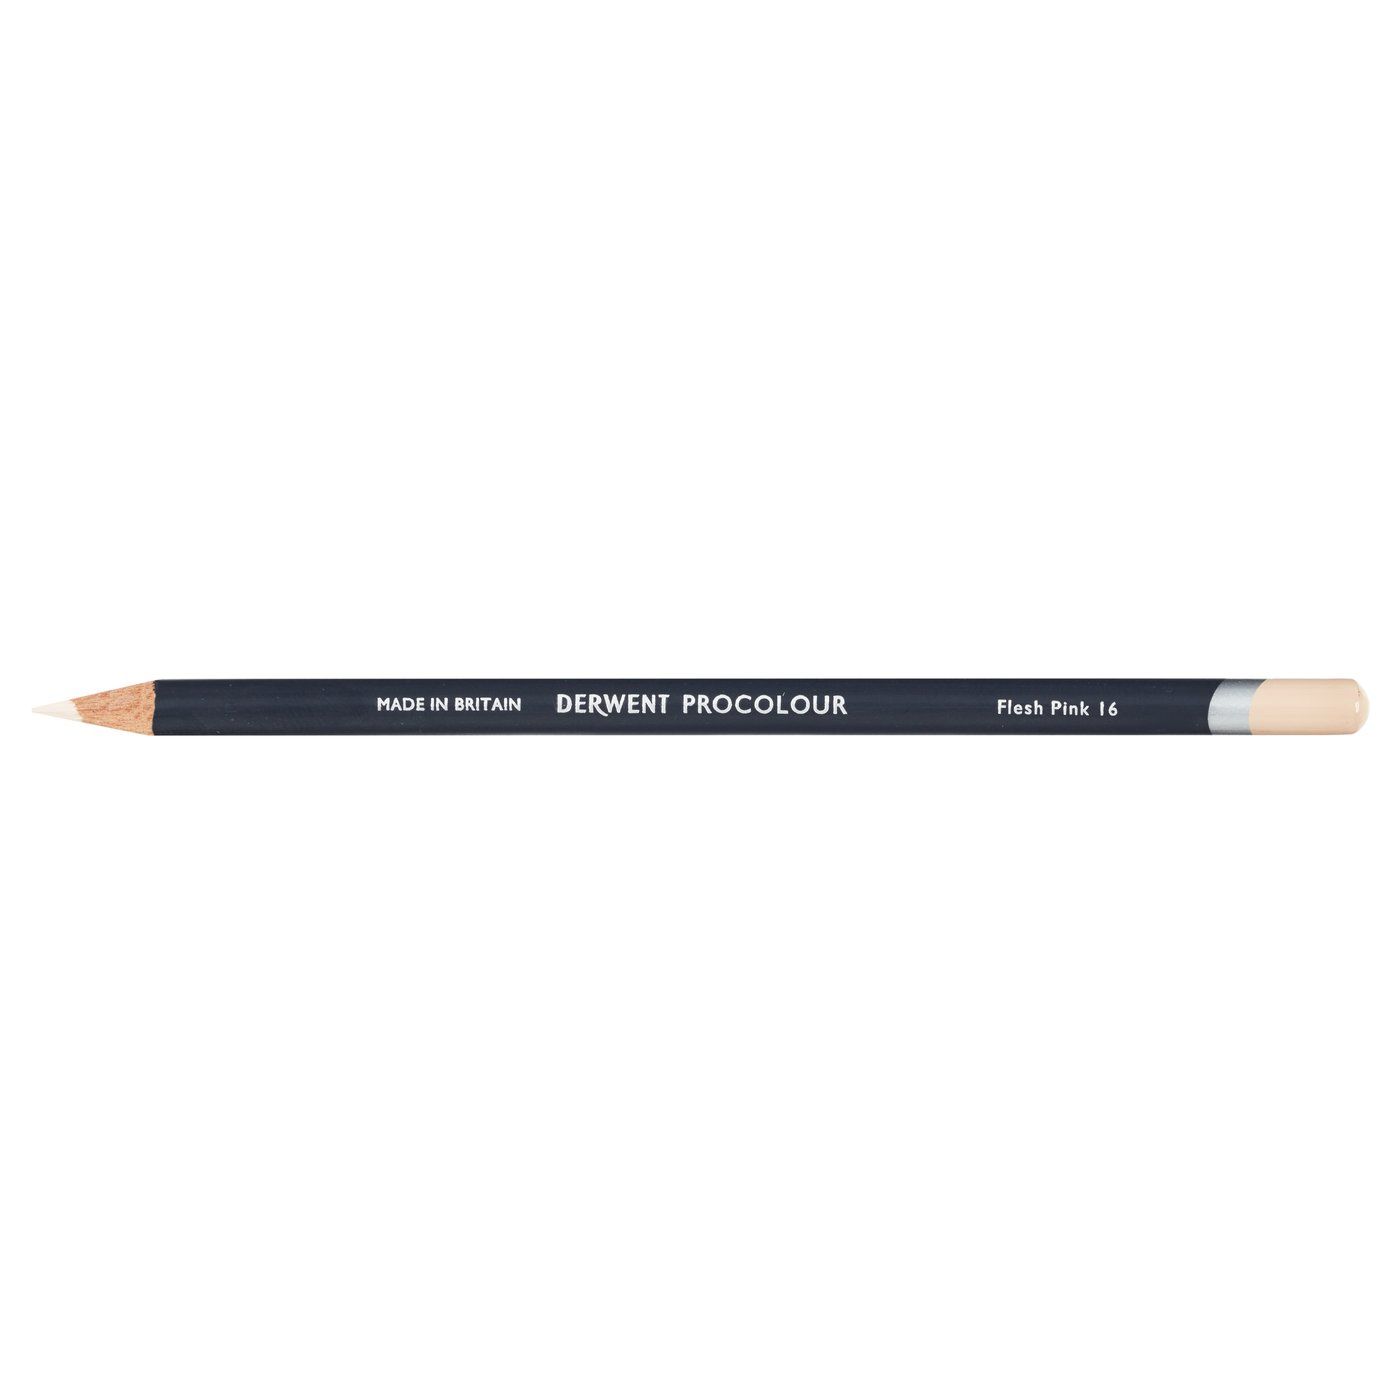 Derwent Procolour Pencil - 16 Flesh Pink